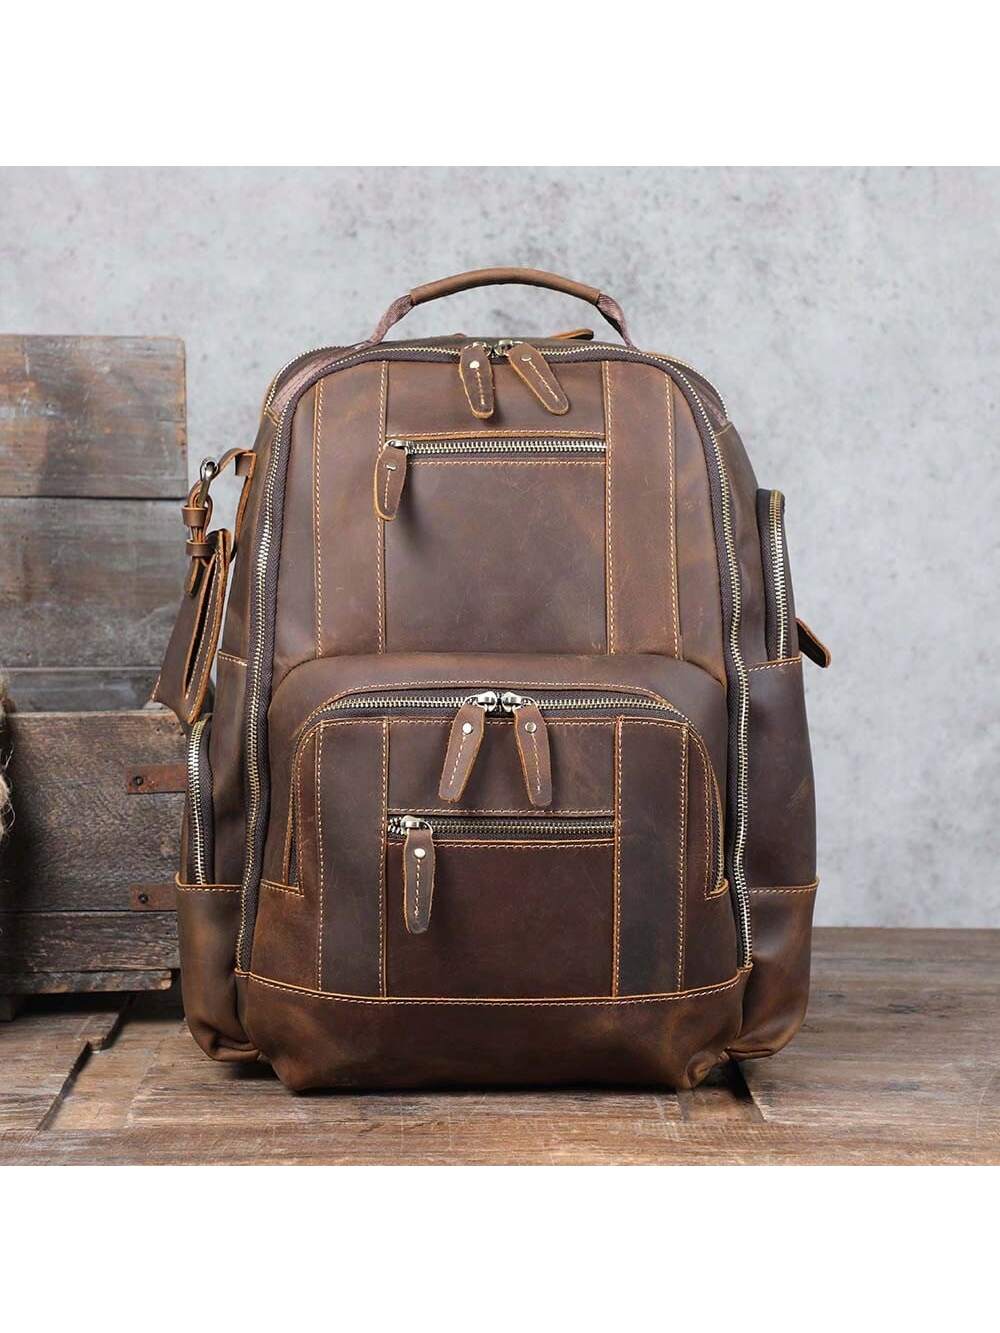 мясник и ножи мясницкий незаменимый безопасный уютный плед рюкзак 17 дюймов винтажный графический винтажный рюкзак для пикников Винтажный мужской рюкзак из натуральной кожи, коричневый